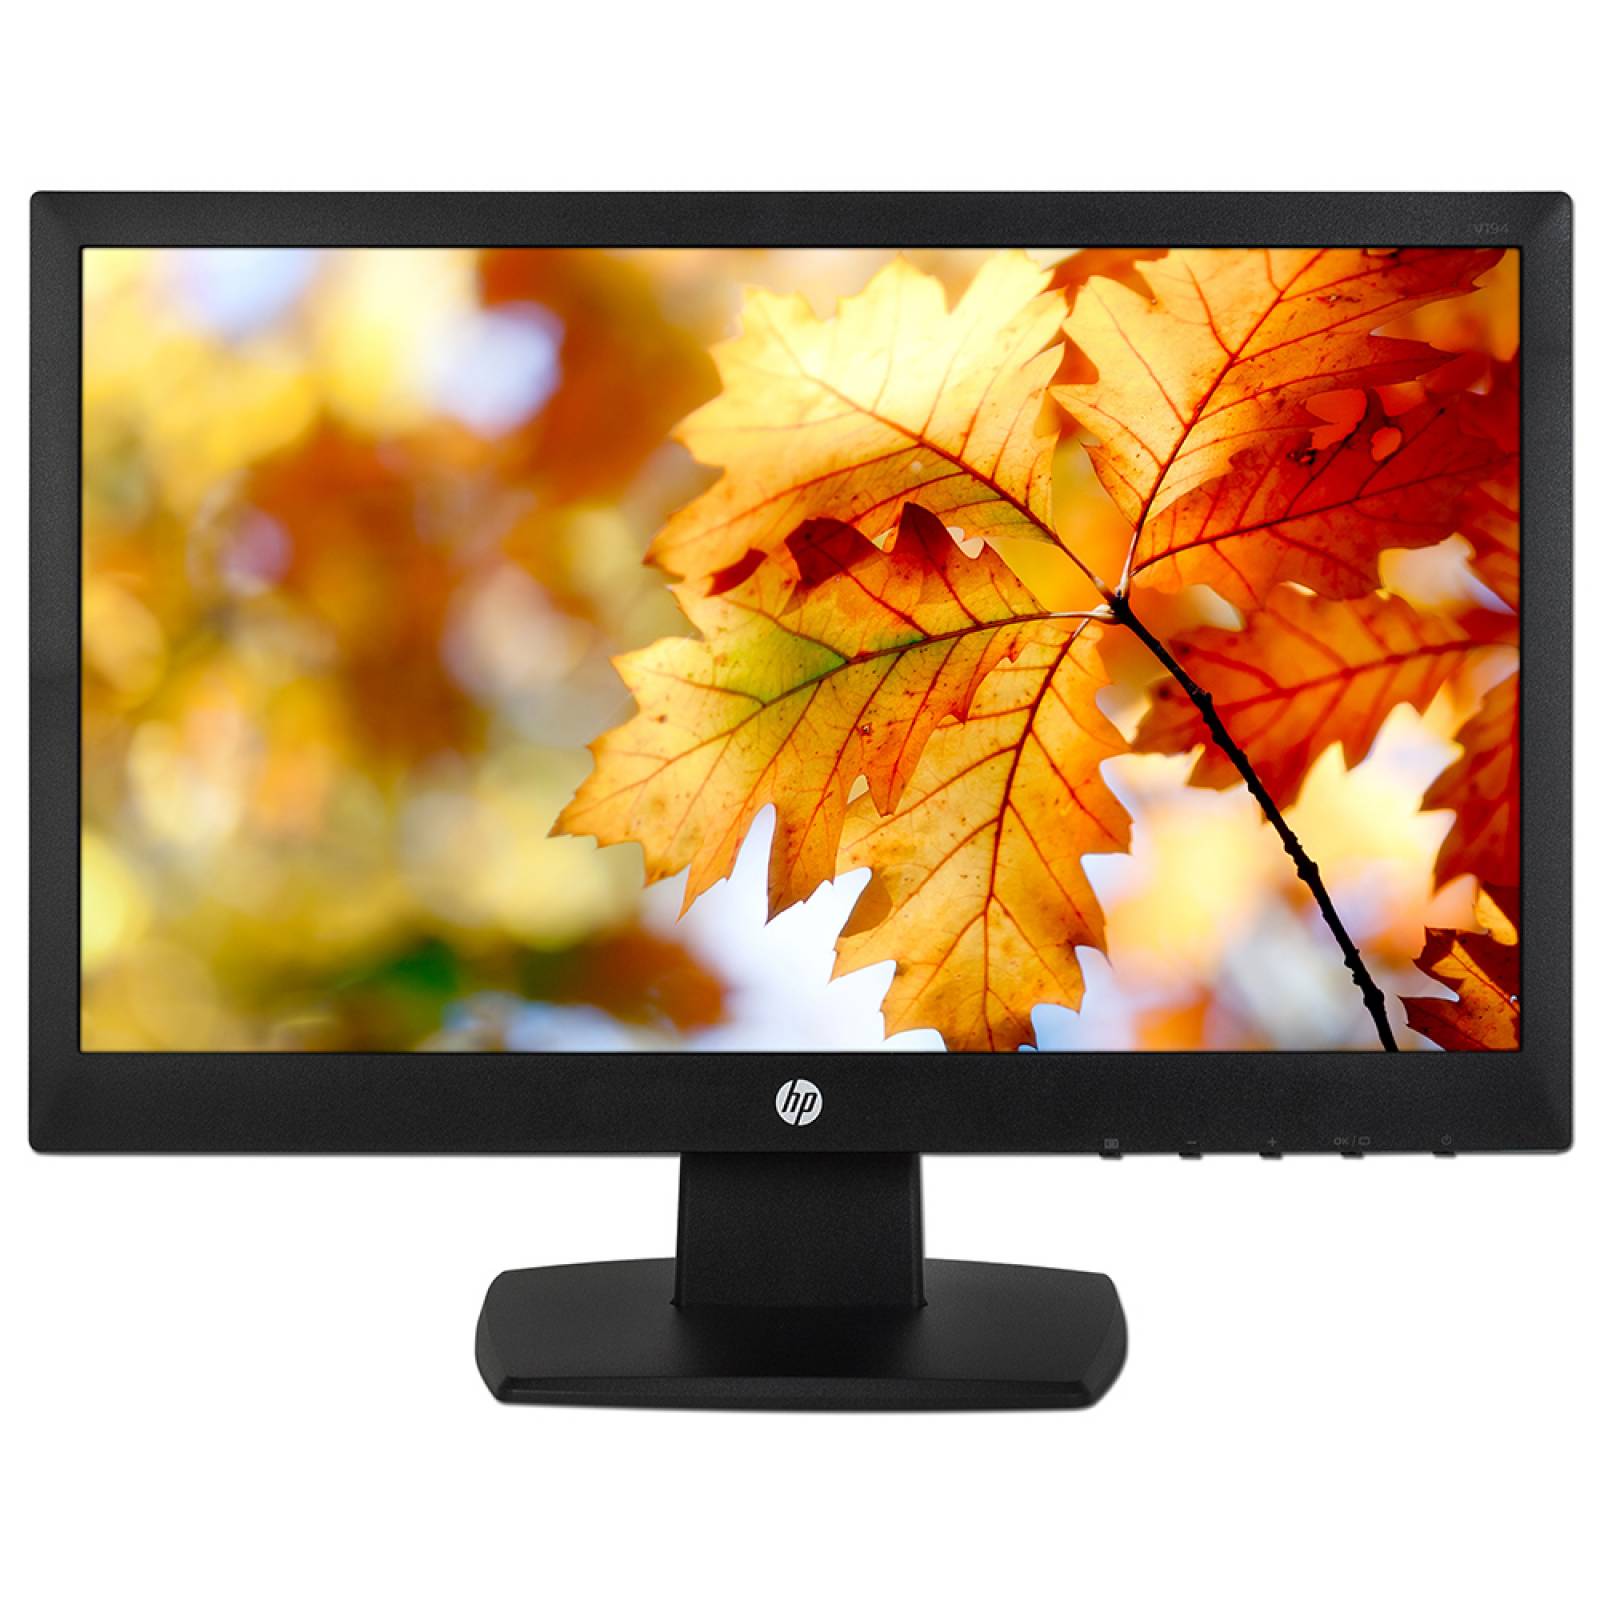 Monitor LED HP V194 de 18 pulgadas Resolución 1366 x 768 5 ms